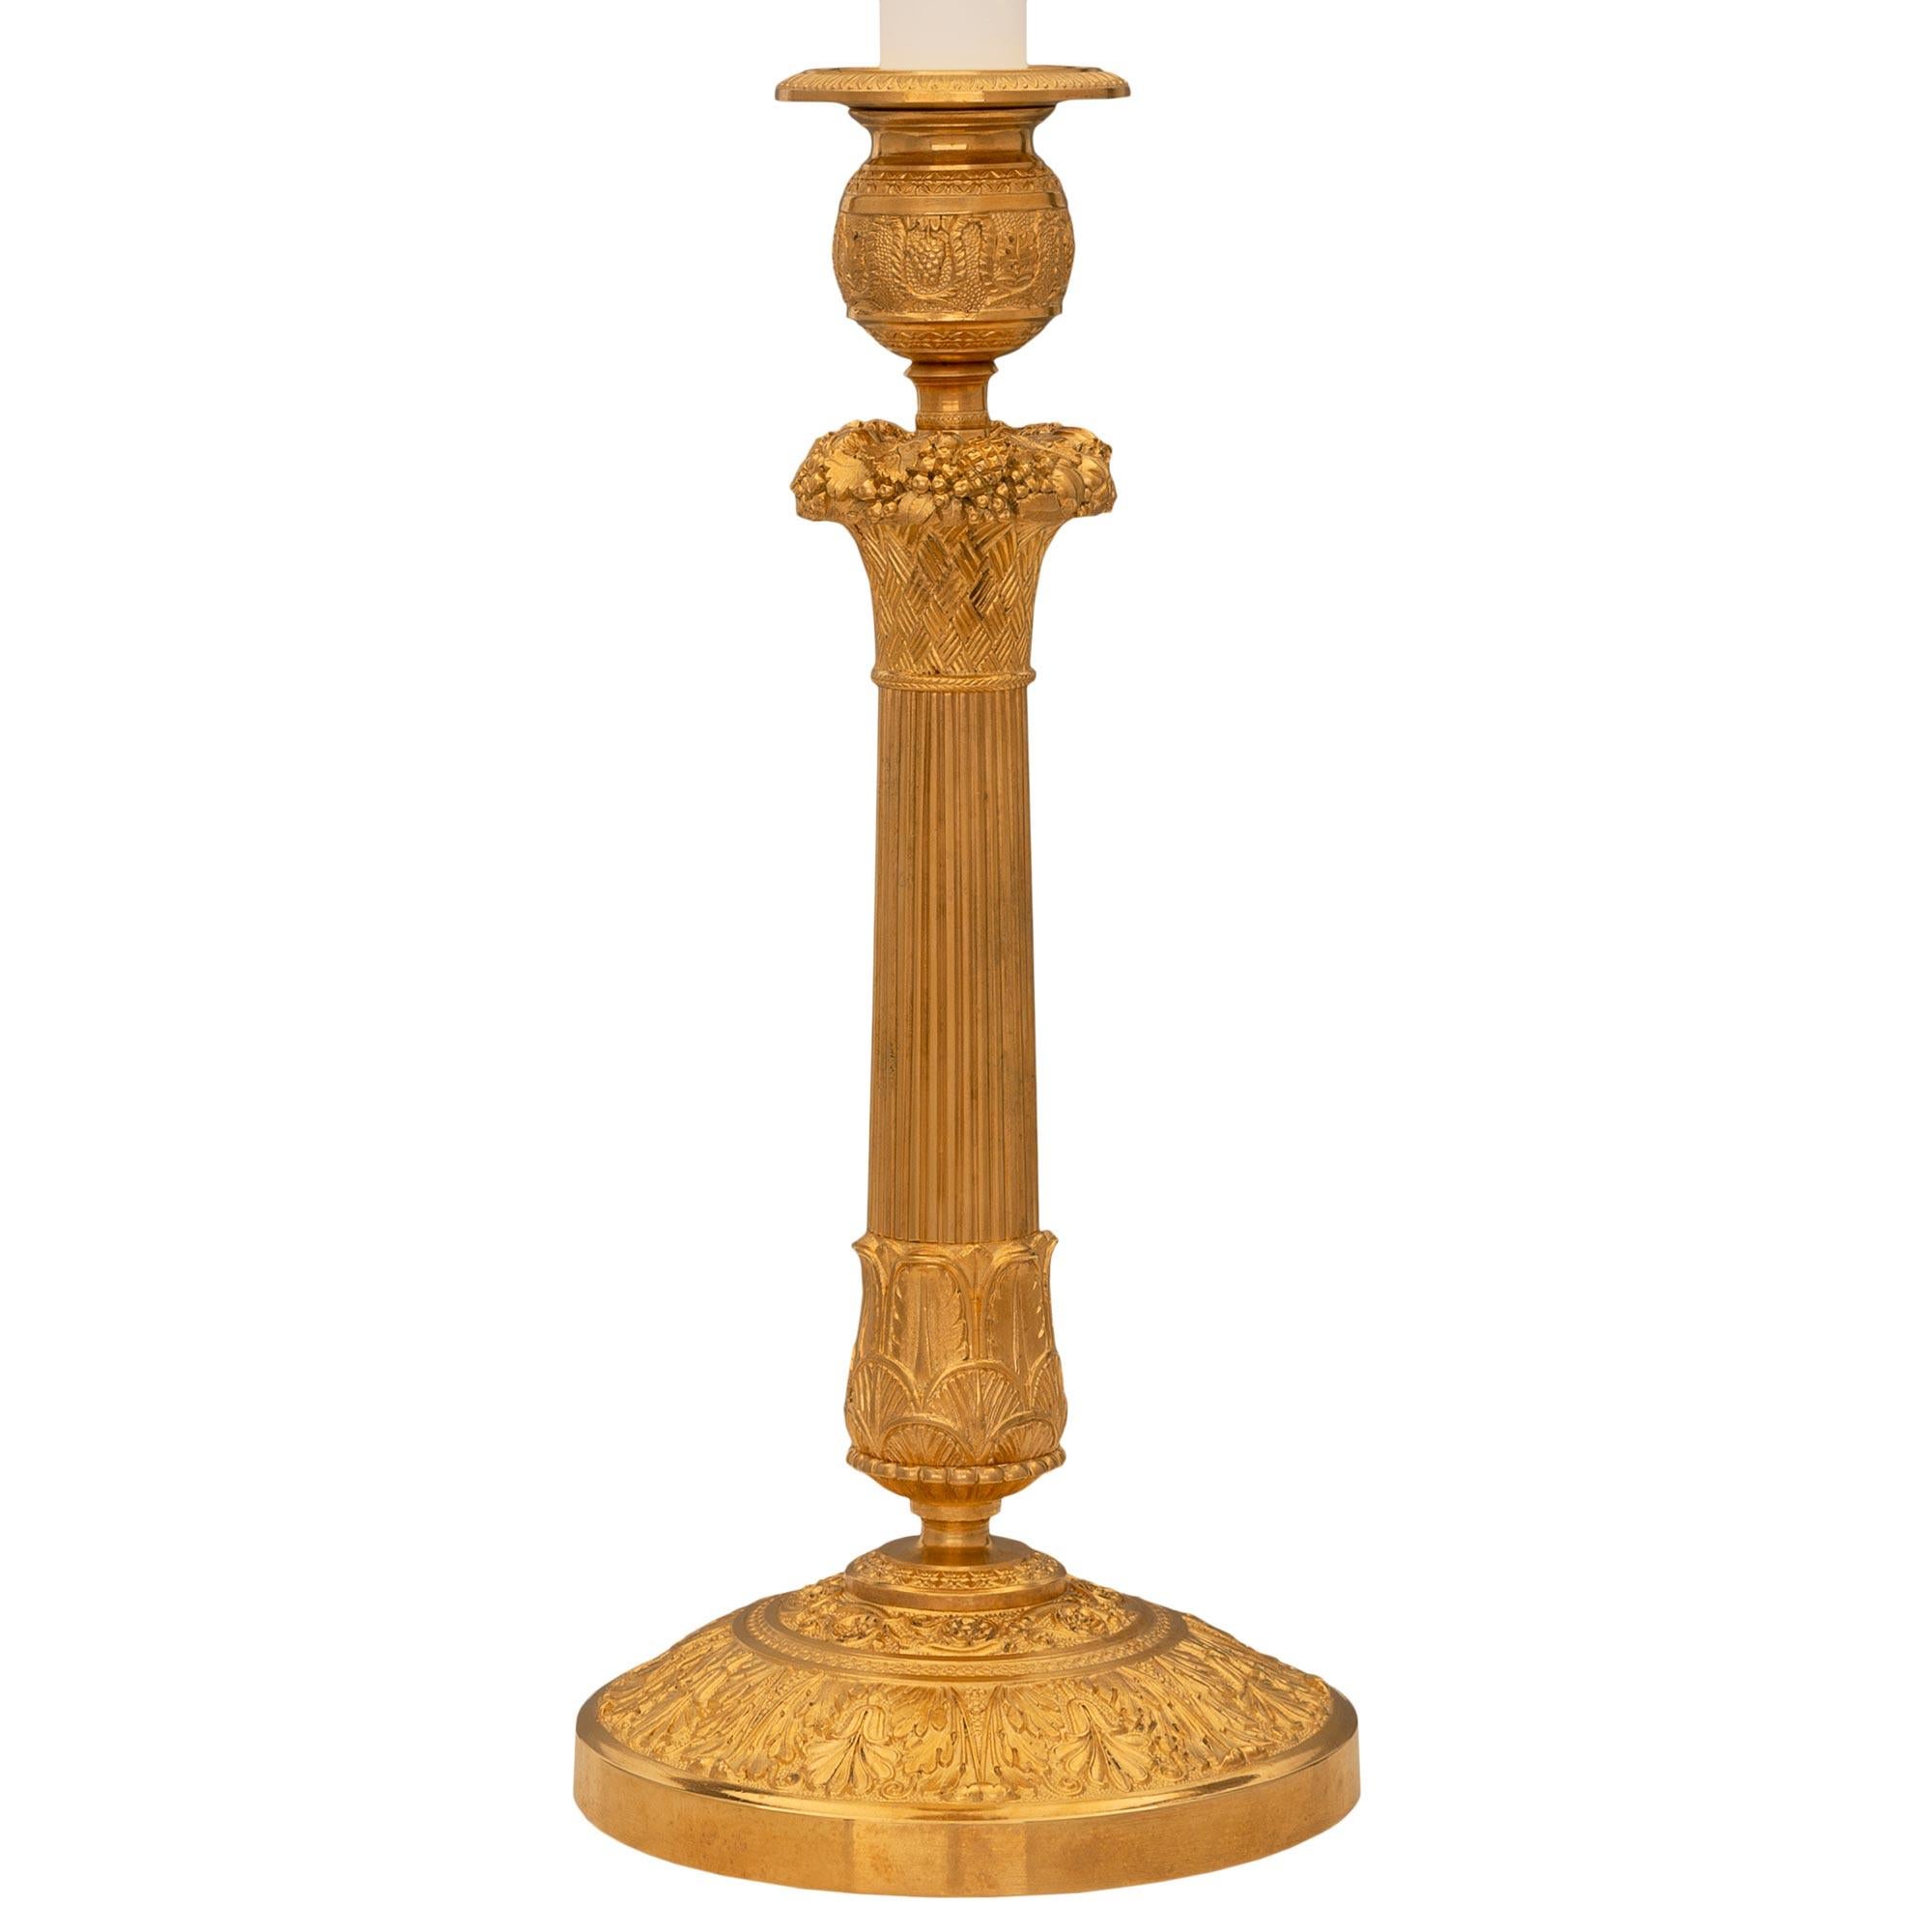 Élégante lampe chandelier en bronze doré de très haute qualité, d'époque Belle Époque et de style Louis XVI, du XIXe siècle. Chaque lampe est surmontée d'une base circulaire ornée d'un bandeau de feuillage enveloppant finement détaillé et présentant